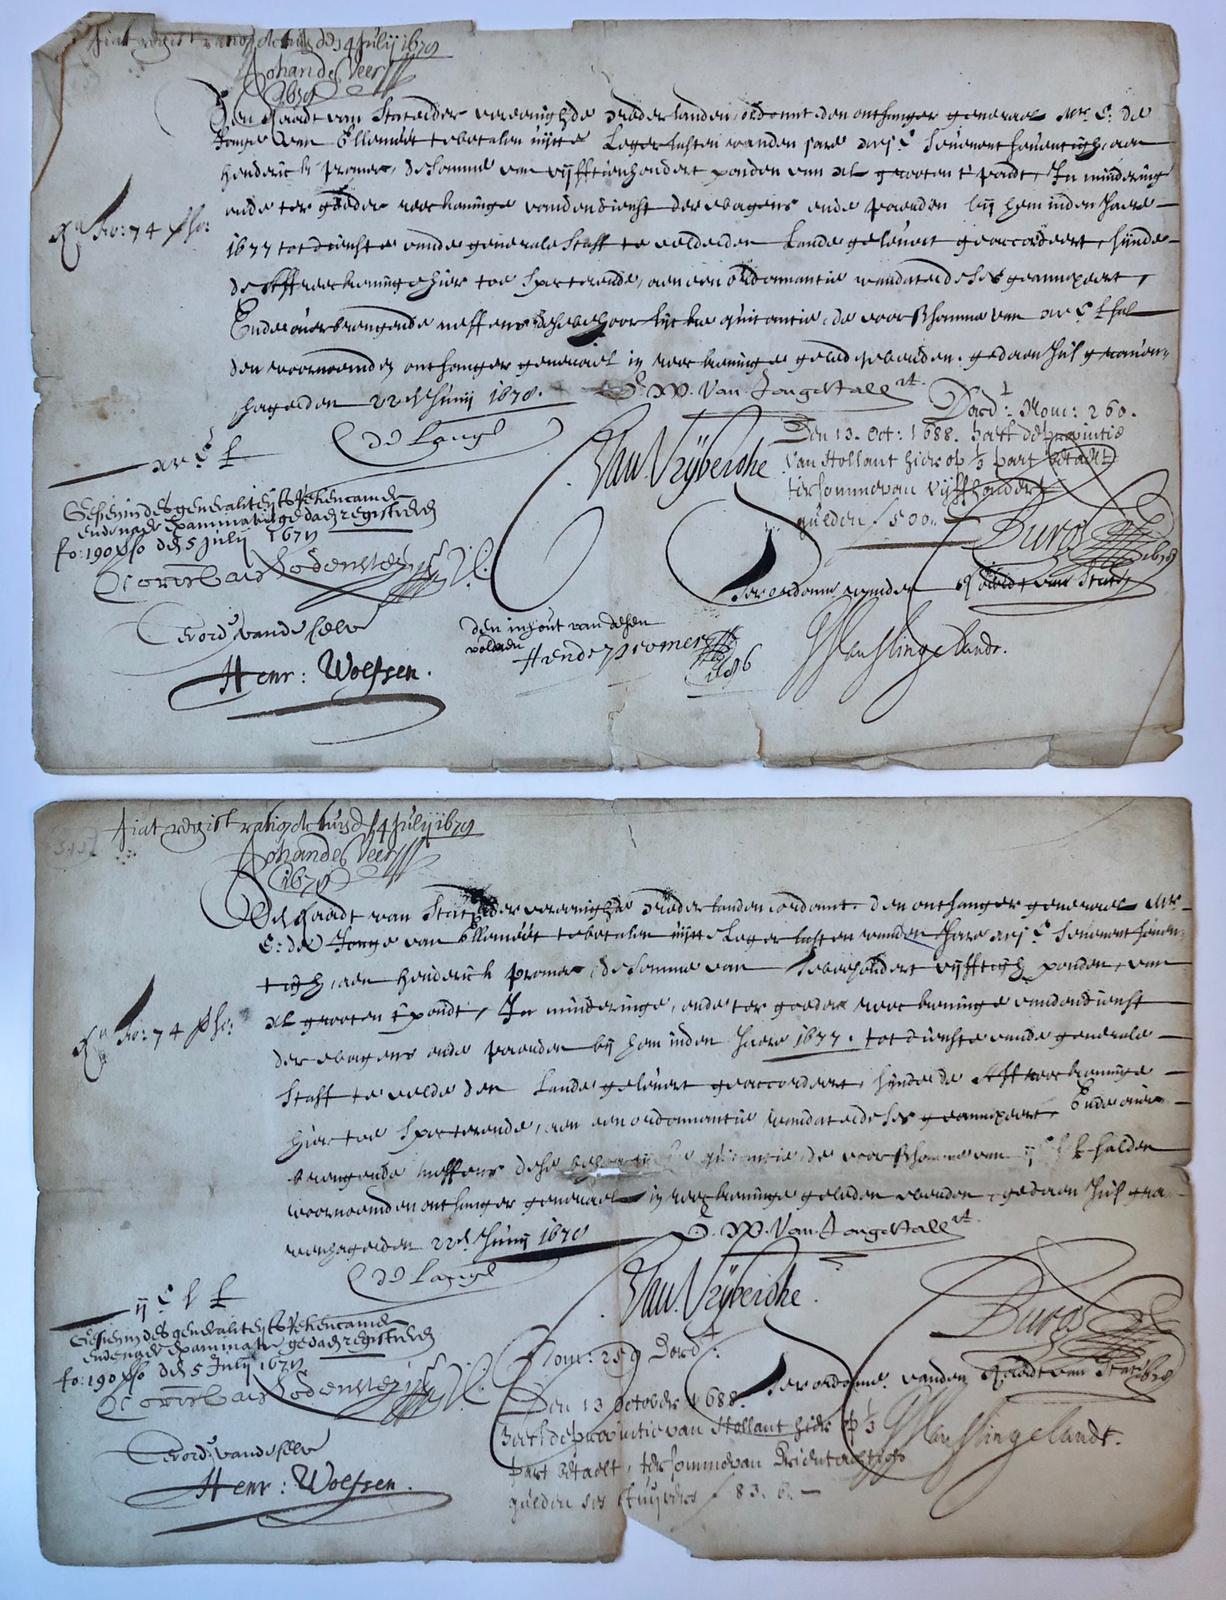  - [MANUSCRIPTS, OORLOGSKOSTEN 1677, PROMER, RAAD VAN STATE Twee opdrachten van de Raad van State aan de ontvanger-generaal mr. E. de Jonge van Ellemeet, om aan Hendrik Promer resp. 1500 en 250 ponden te betalen in mindering van betaling van door hem geleverde wagens en paarden voor de Generale Staf te velde in 1677. Folio, oblong, 2 p., 1678, getekend door o.a. C. de Lange, Van Jongestall, C. van Vrijberghe, Hendrik Promer, J.J. van Slingelandt, Corn. van Lodensteyn, Henr. Wolfsen, Johan de Veer.